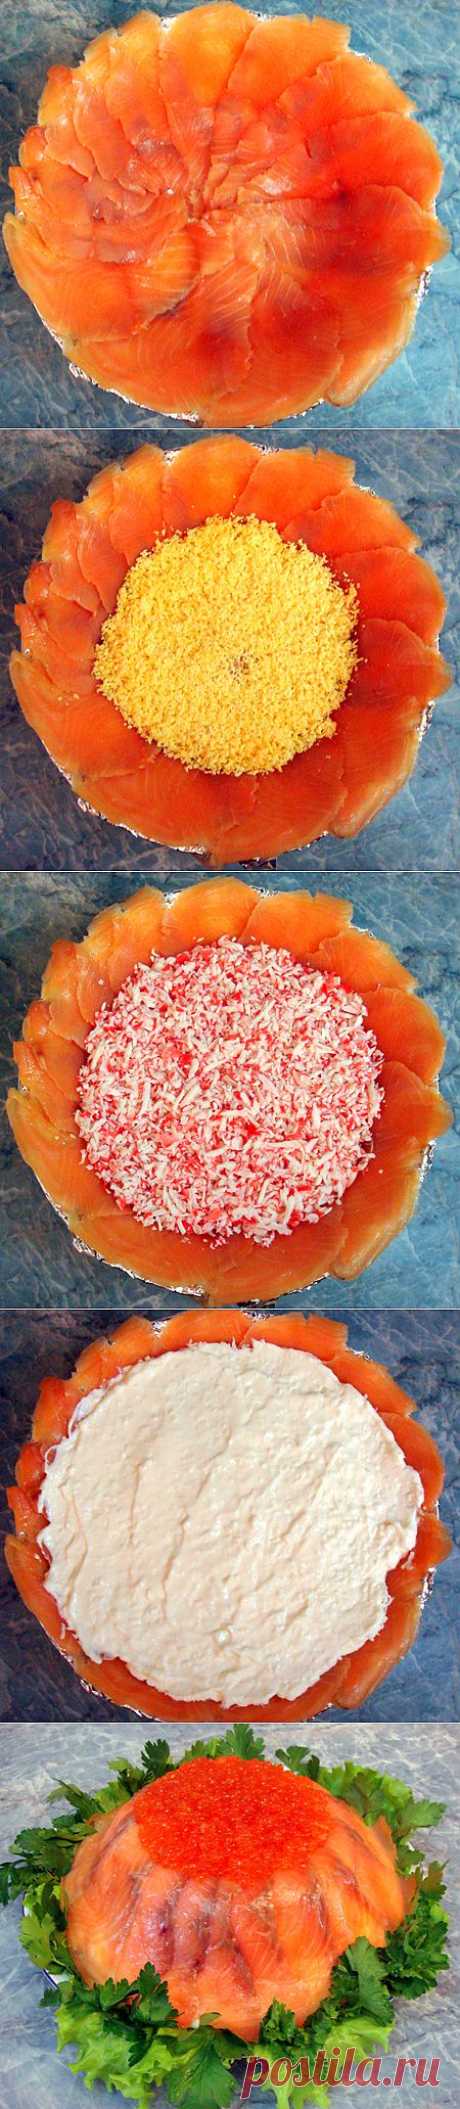 Рецепт вкусного рыбного торта - Слоеные салаты . 1001 ЕДА вкусные рецепты с фото!